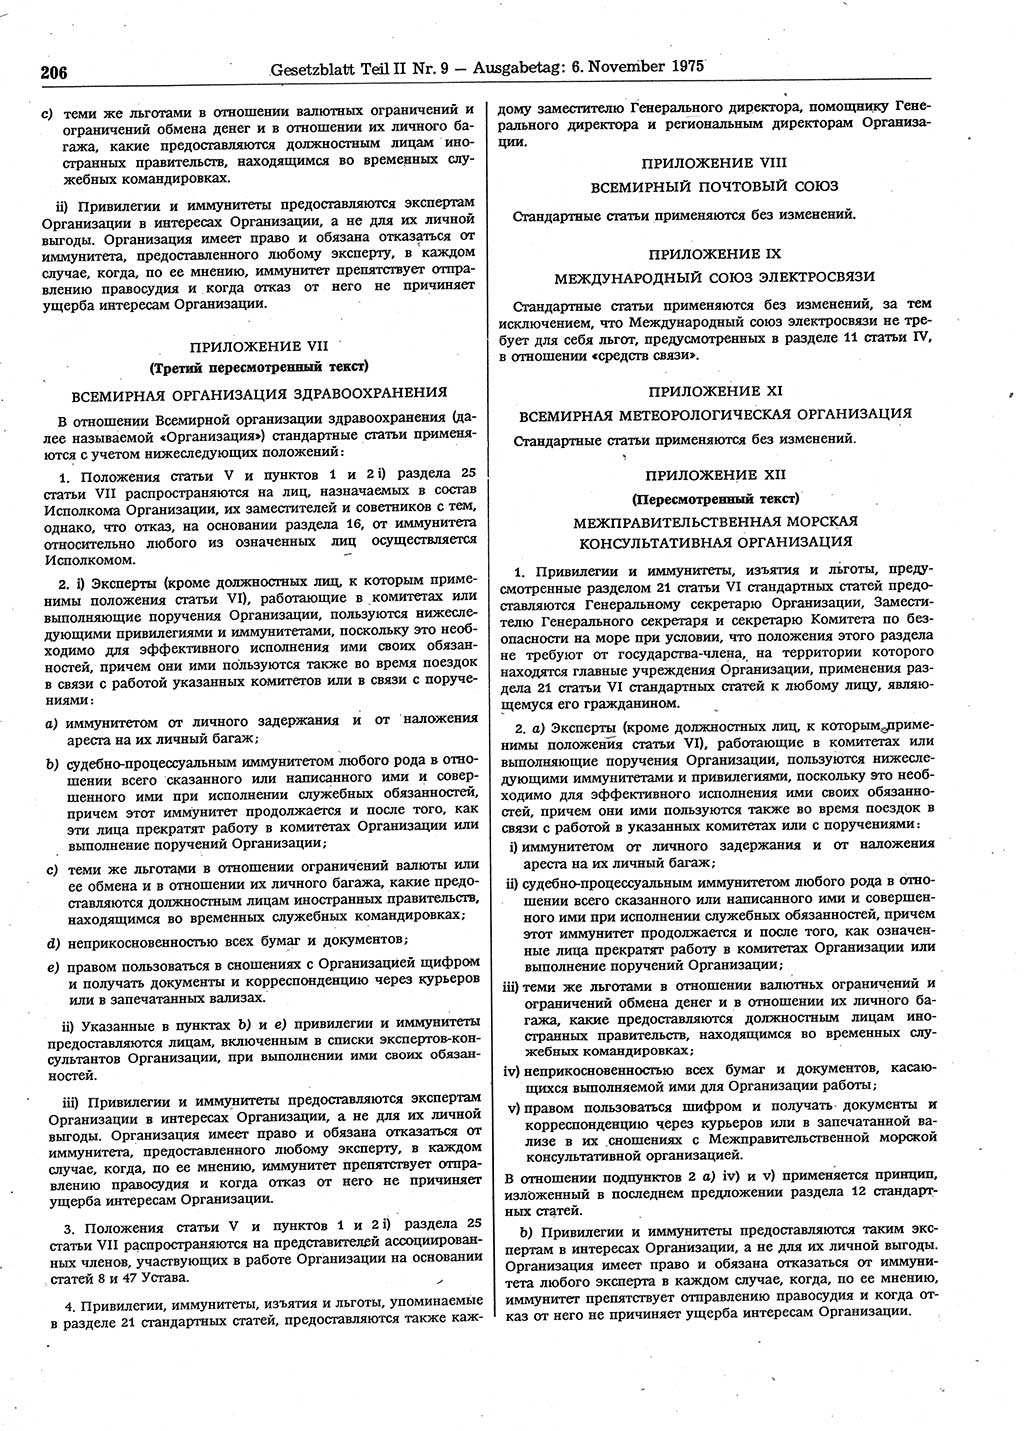 Gesetzblatt (GBl.) der Deutschen Demokratischen Republik (DDR) Teil ⅠⅠ 1975, Seite 206 (GBl. DDR ⅠⅠ 1975, S. 206)